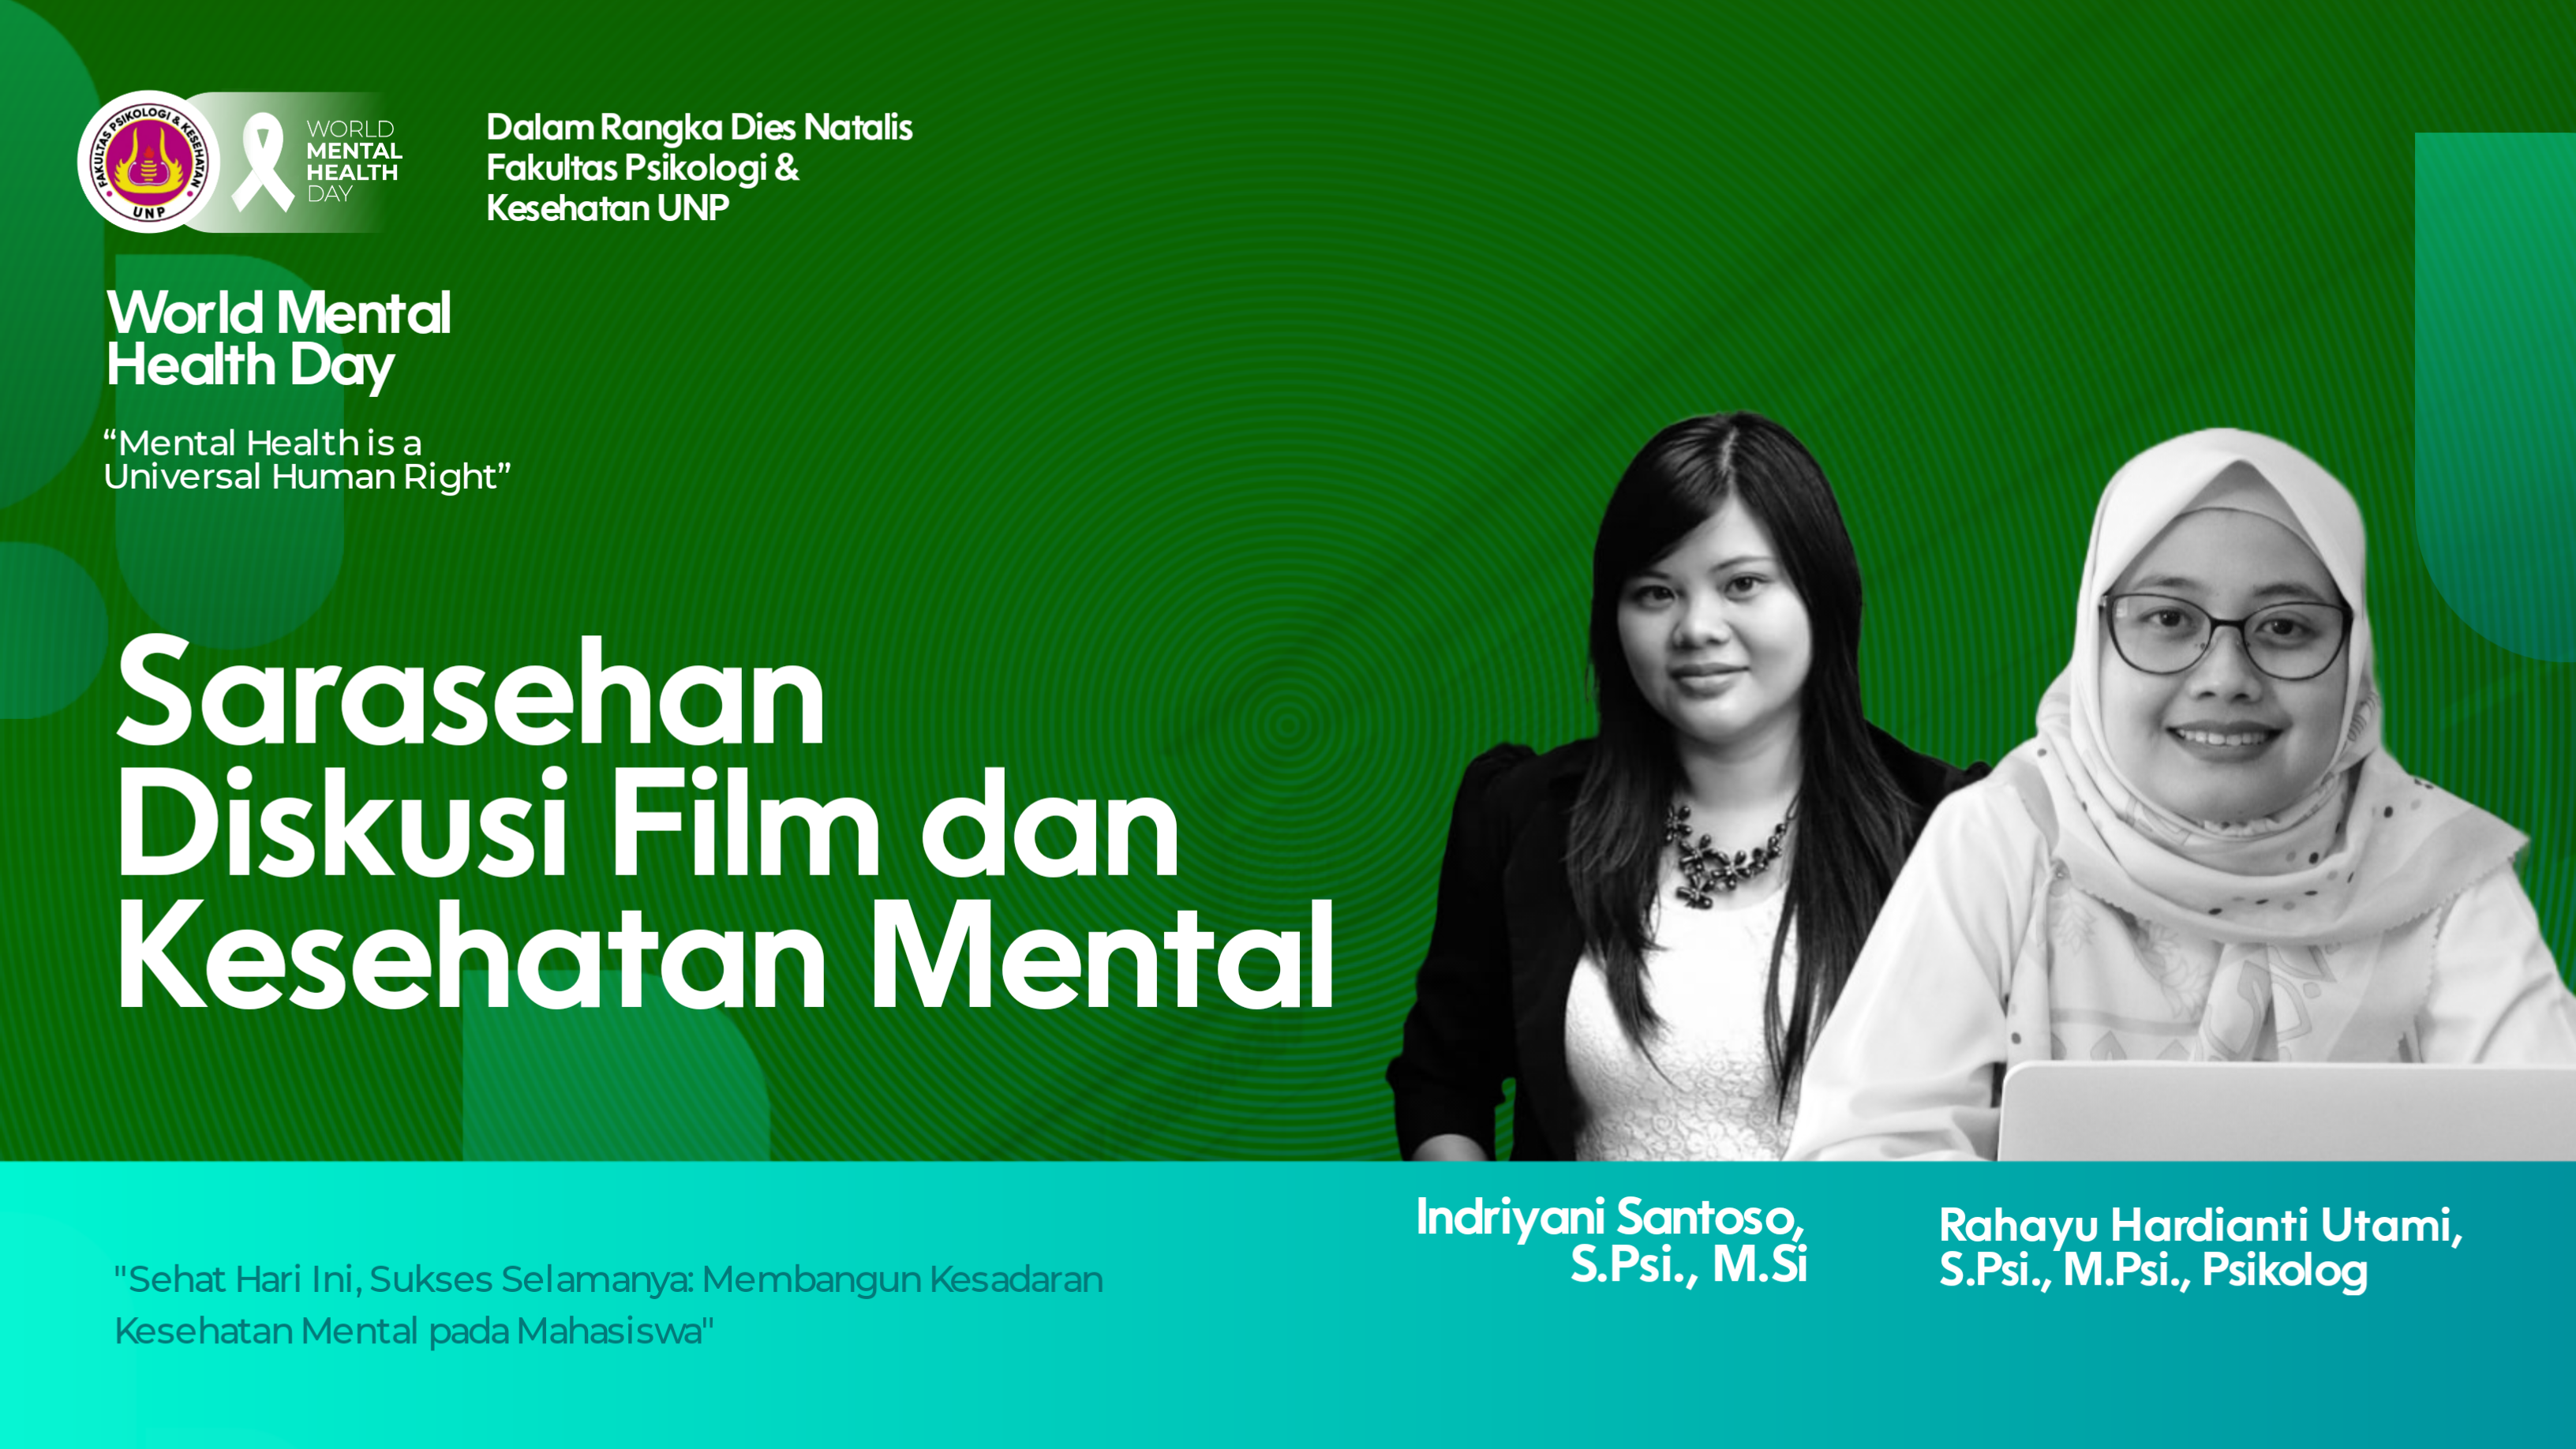 FPK Gelar Sarasehan DiskusiFIlm dan Kesehatan Mental Dalam Rangka Hari Kesehatan Mental Sedunia